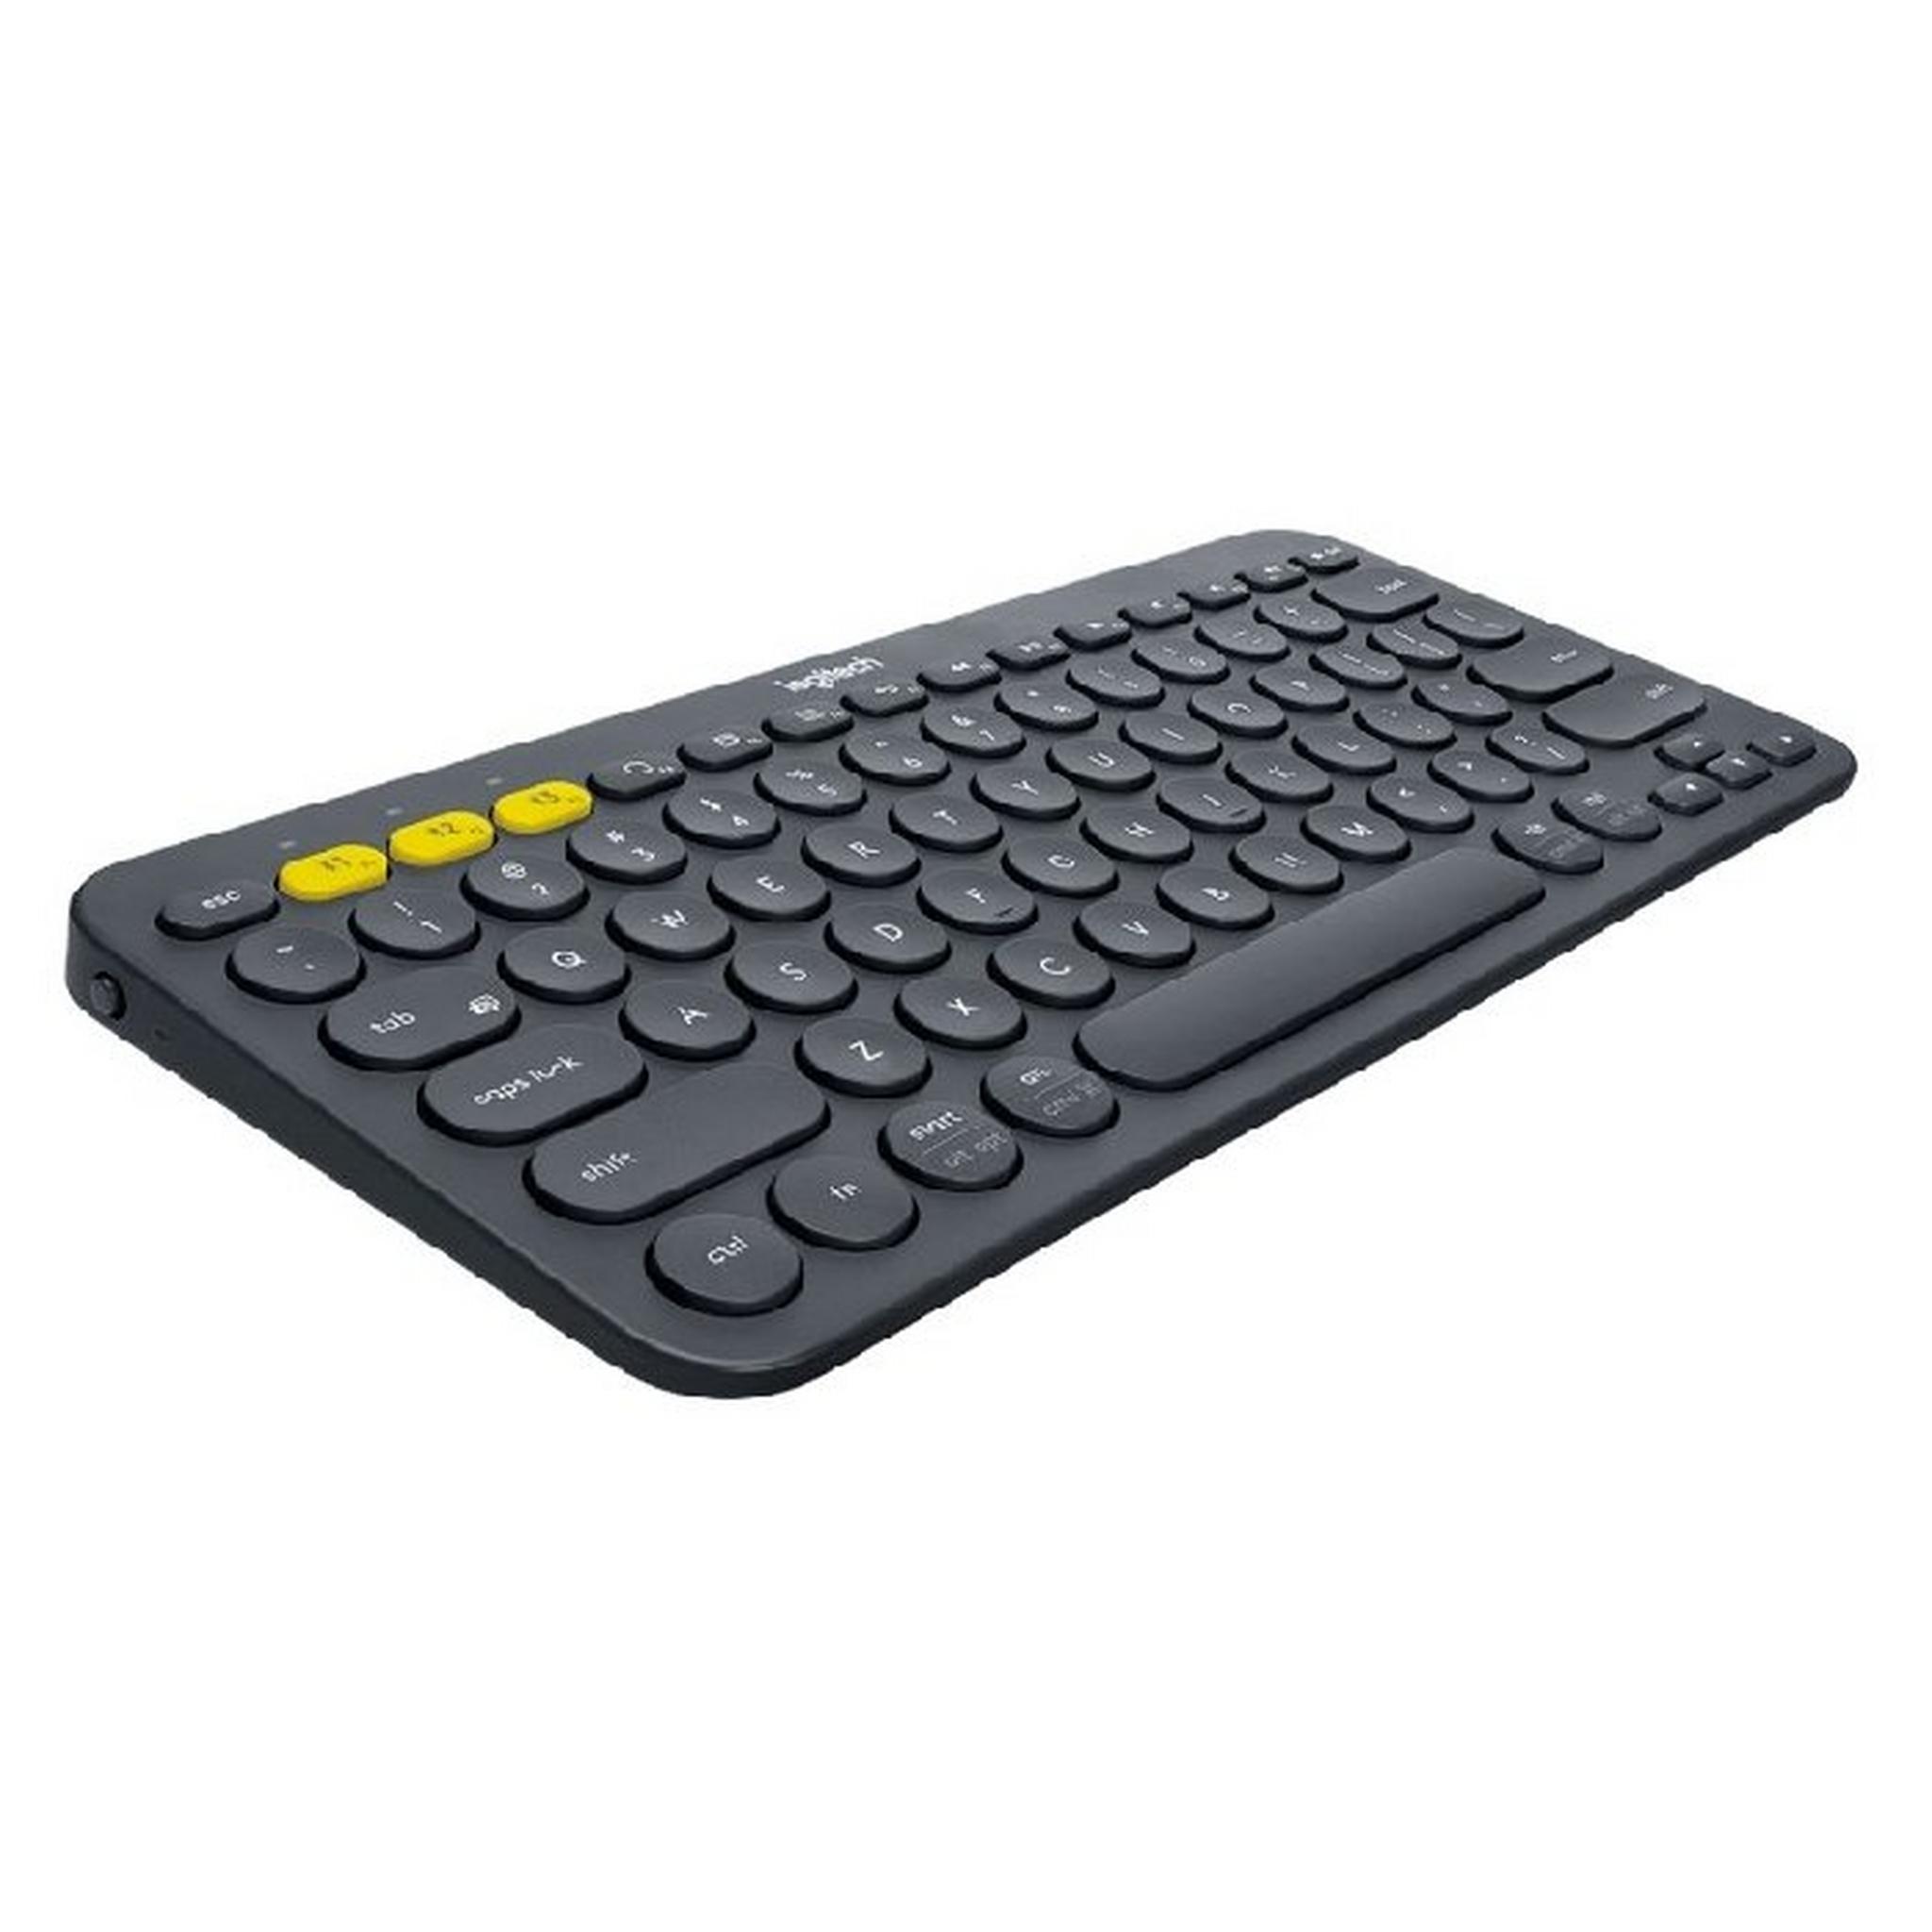 لوحة مفاتيح متعدد الأجهزة بلوتوث كي 380 من لوجتيك - رمادي